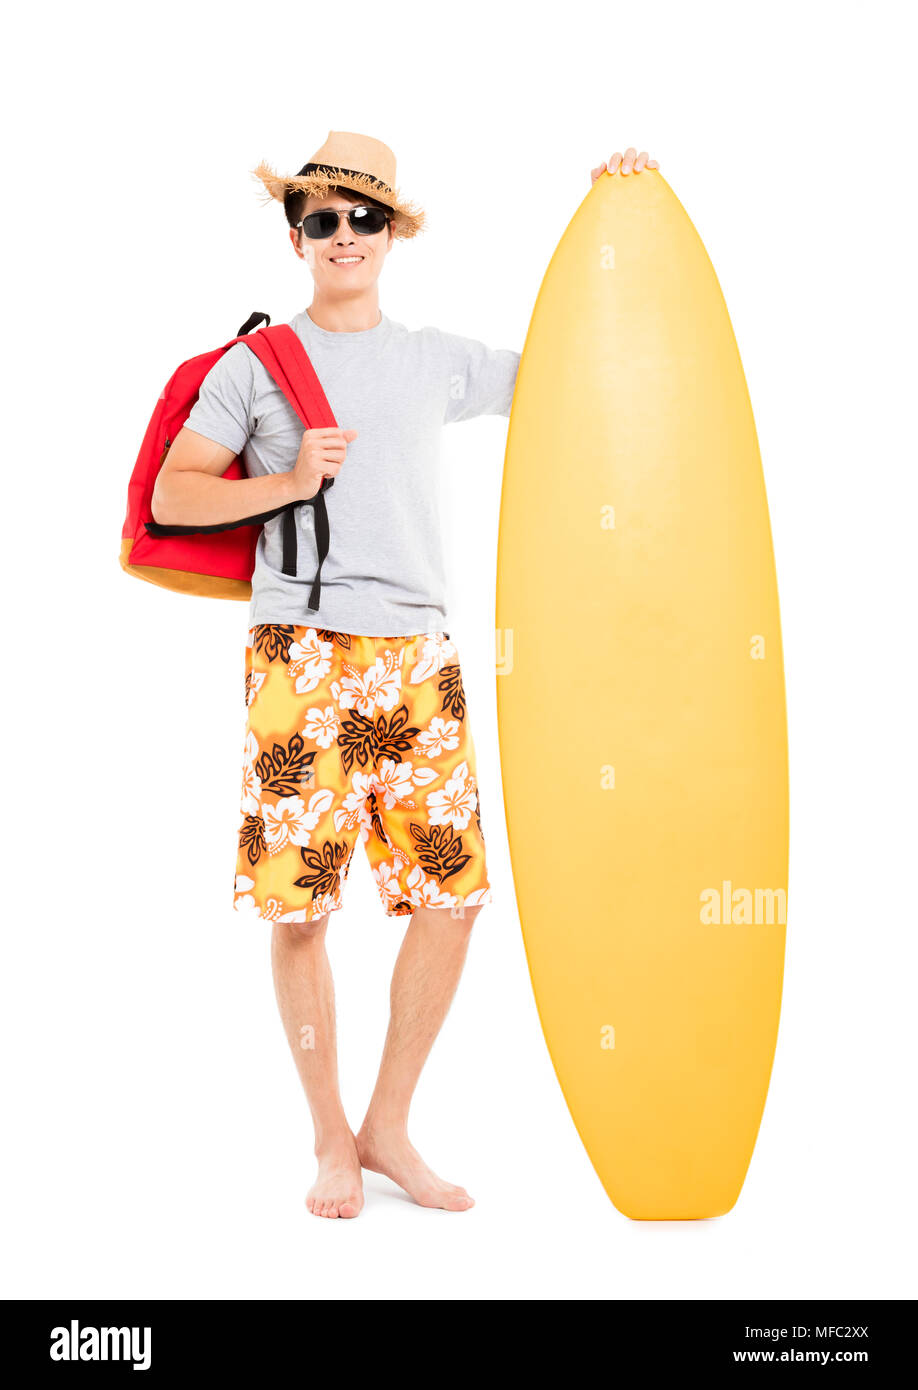 Man holding surfboard et concept de vacances d'été Banque D'Images